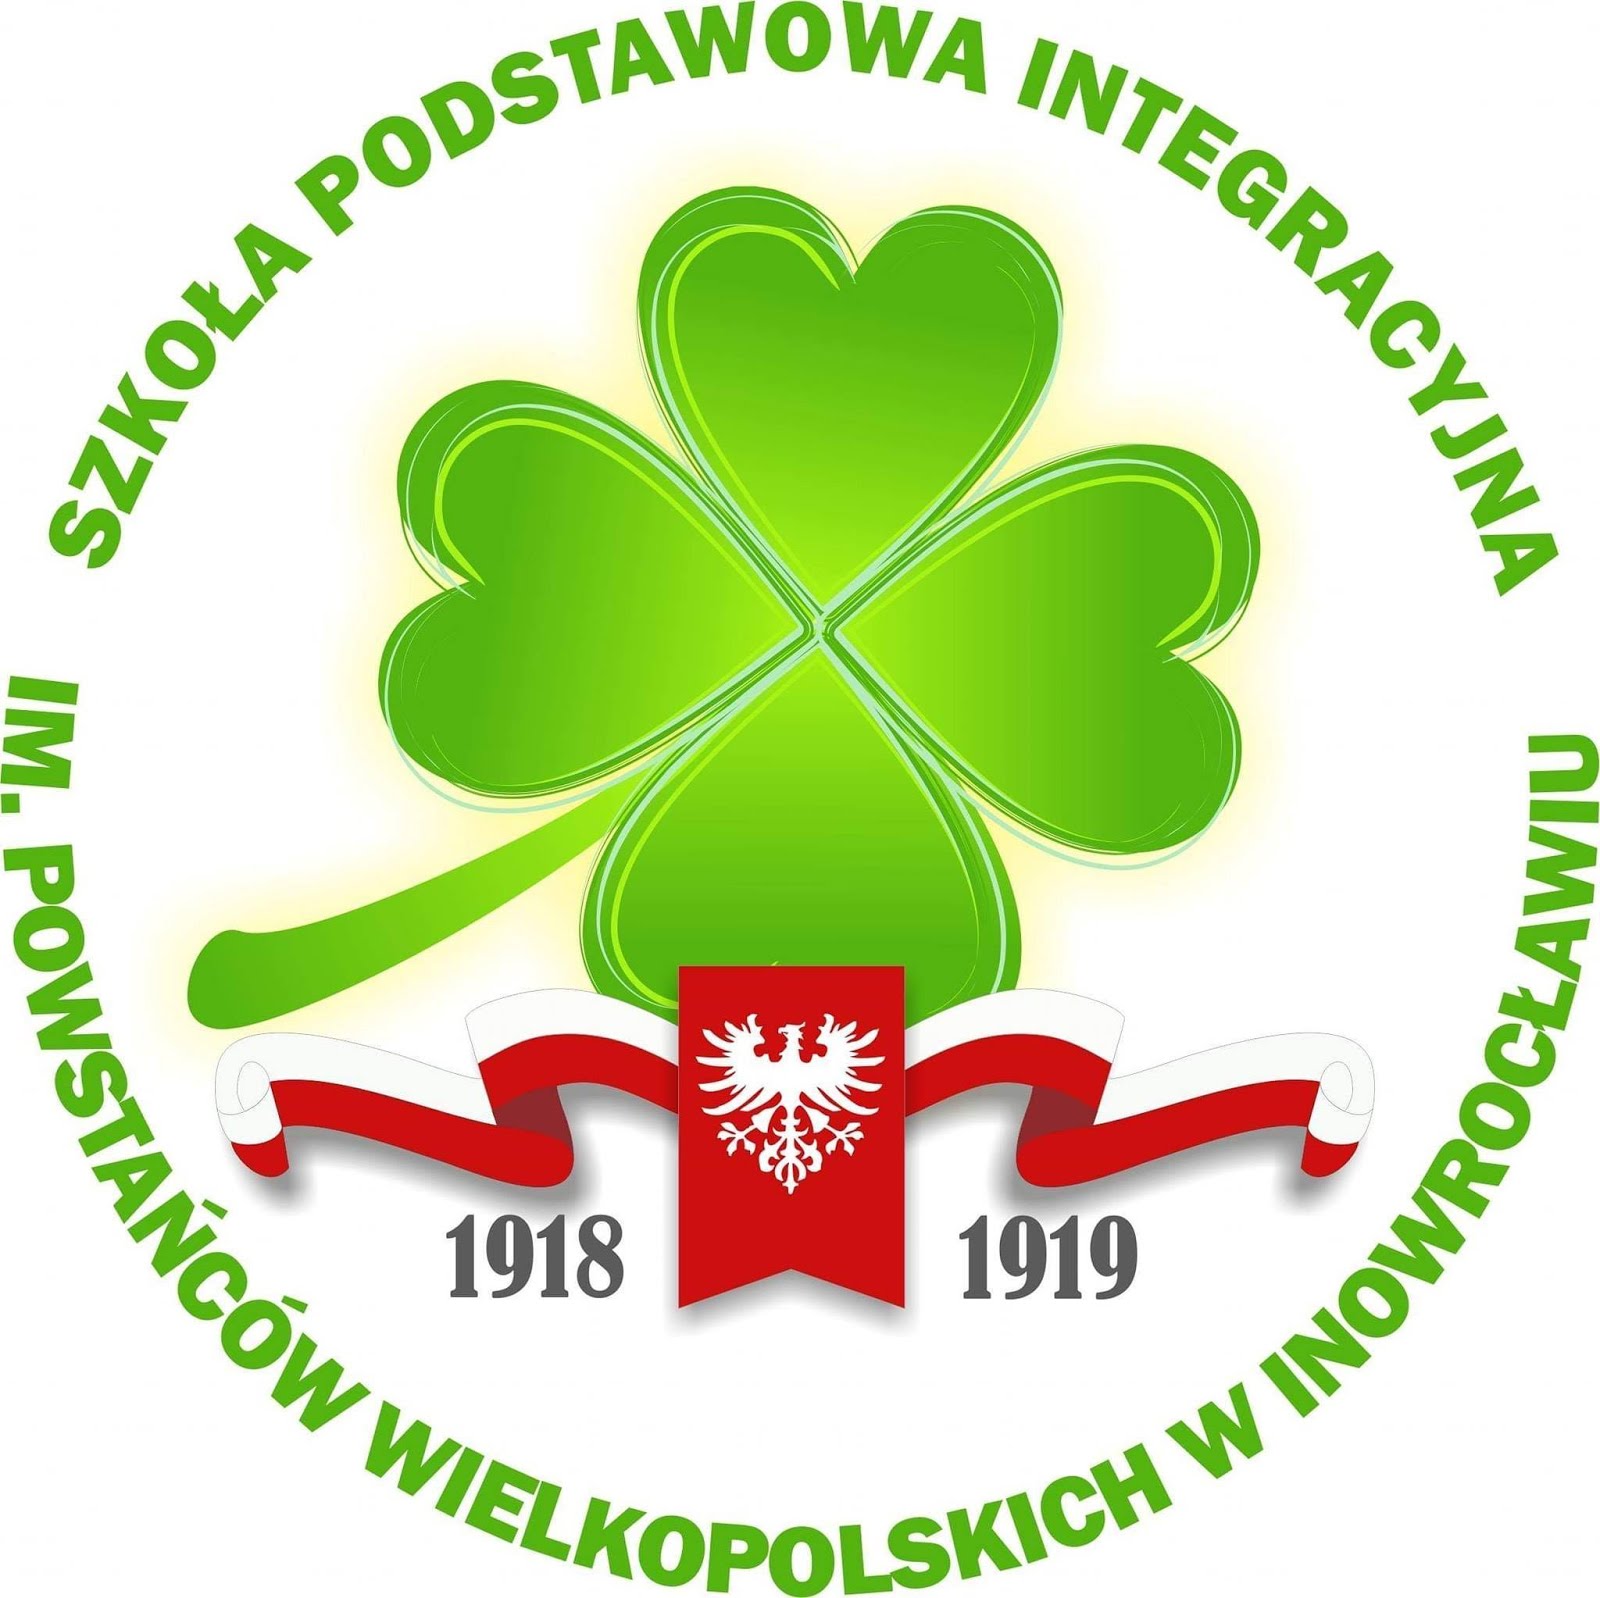 Szkoła Podstawowa Integracyjna im. Powstańców Wielkopolskich w Inowrocławiu